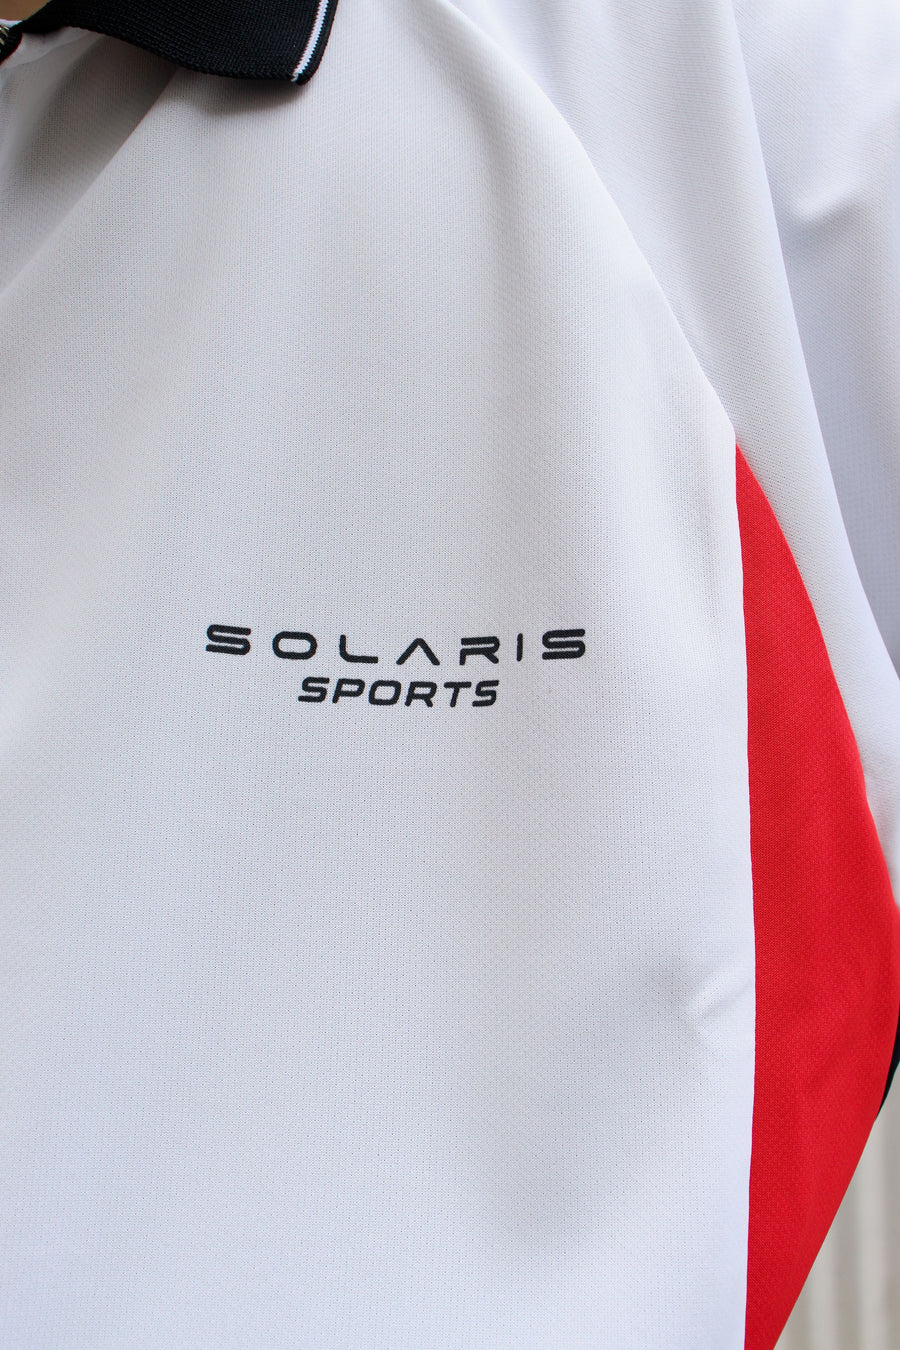 SOLARIS SPORTS  L/S FOOTBALL SHIRT